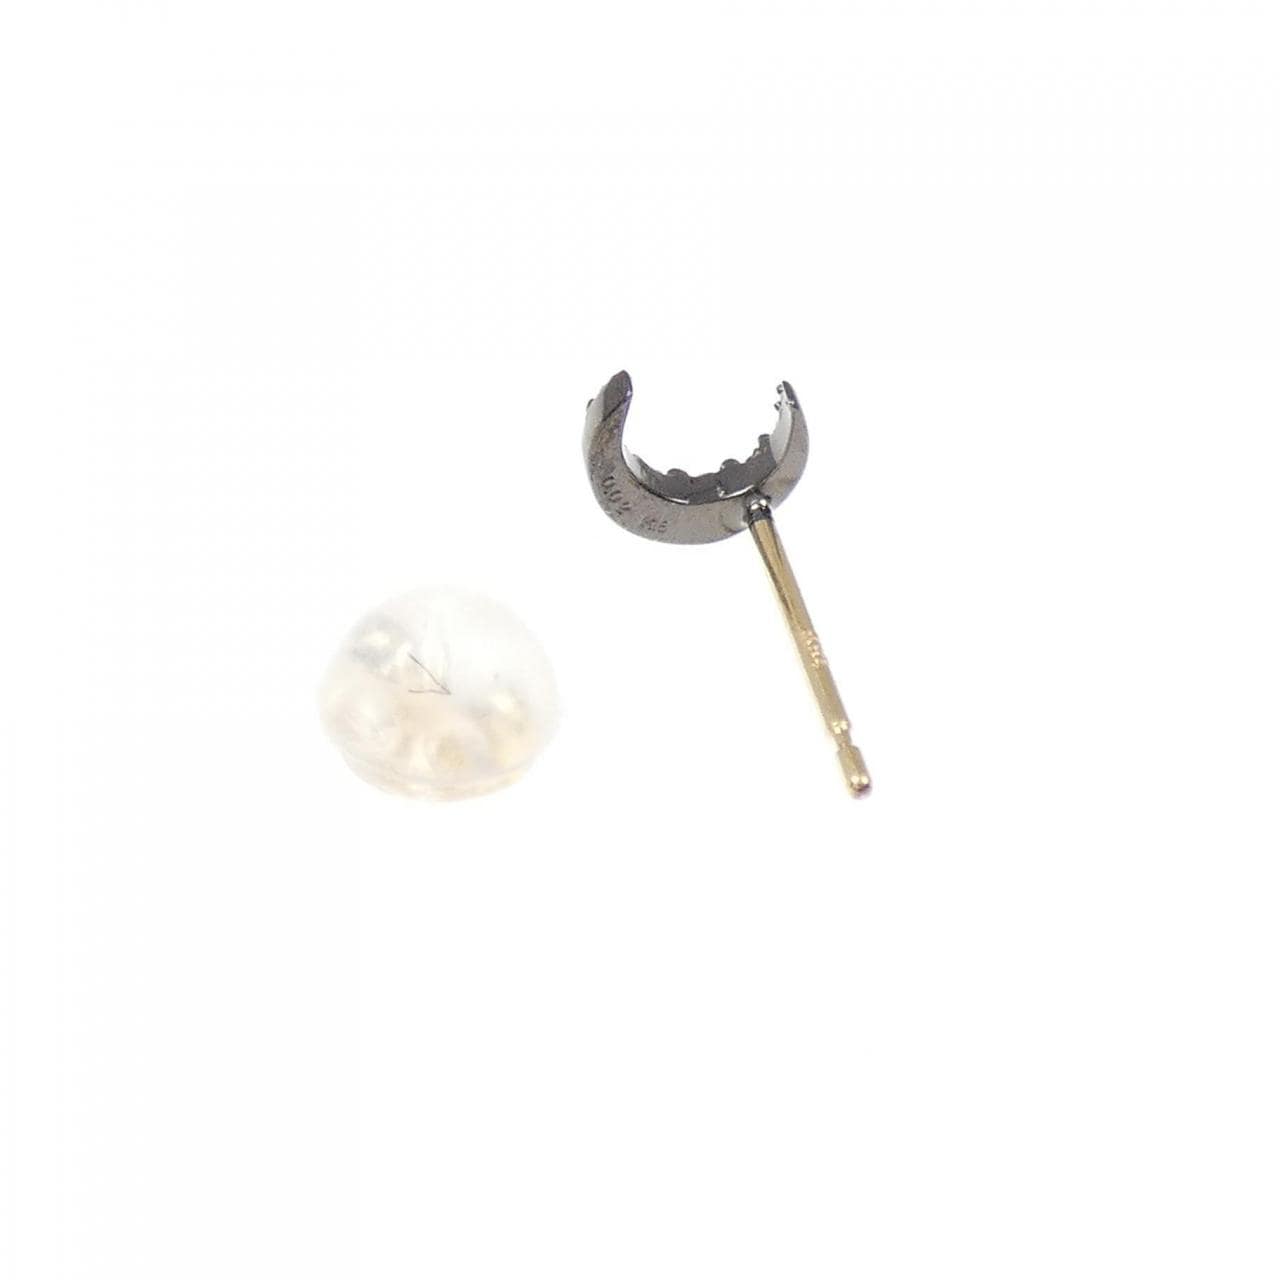 [BRAND NEW] K18BG/K18 Moon Diamond Earrings, One Ear, 0.02CT